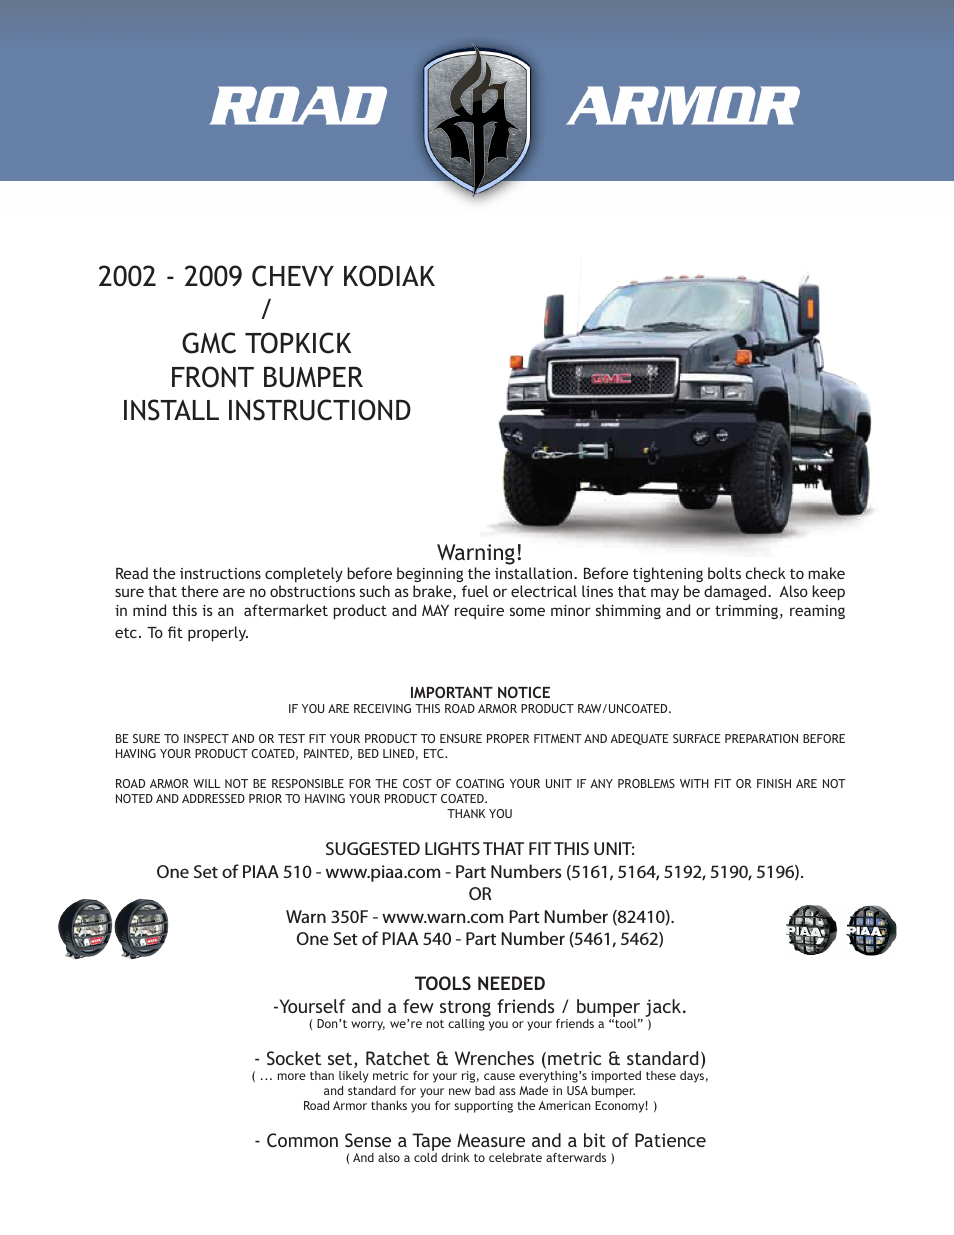 2002-2009 GMC Topkick Front Bumper